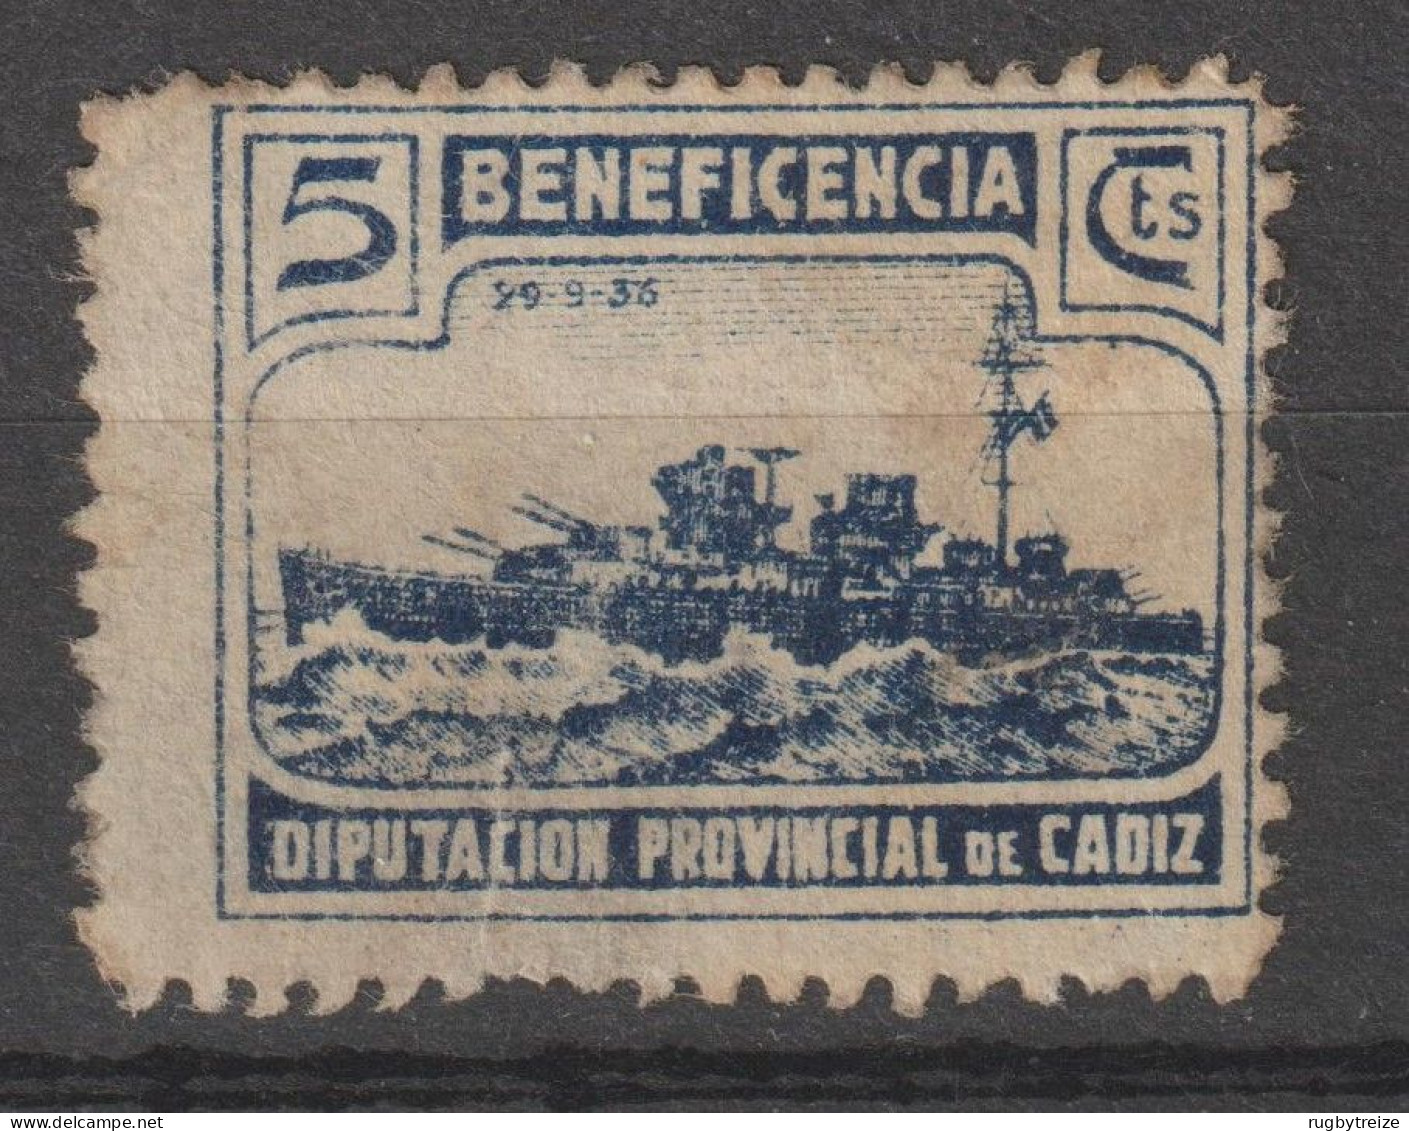 6973 BENEFICENCIA CADIZ 1938 Diputacion Provincial. BATEAU CUIRASSé - Spanish Civil War Labels